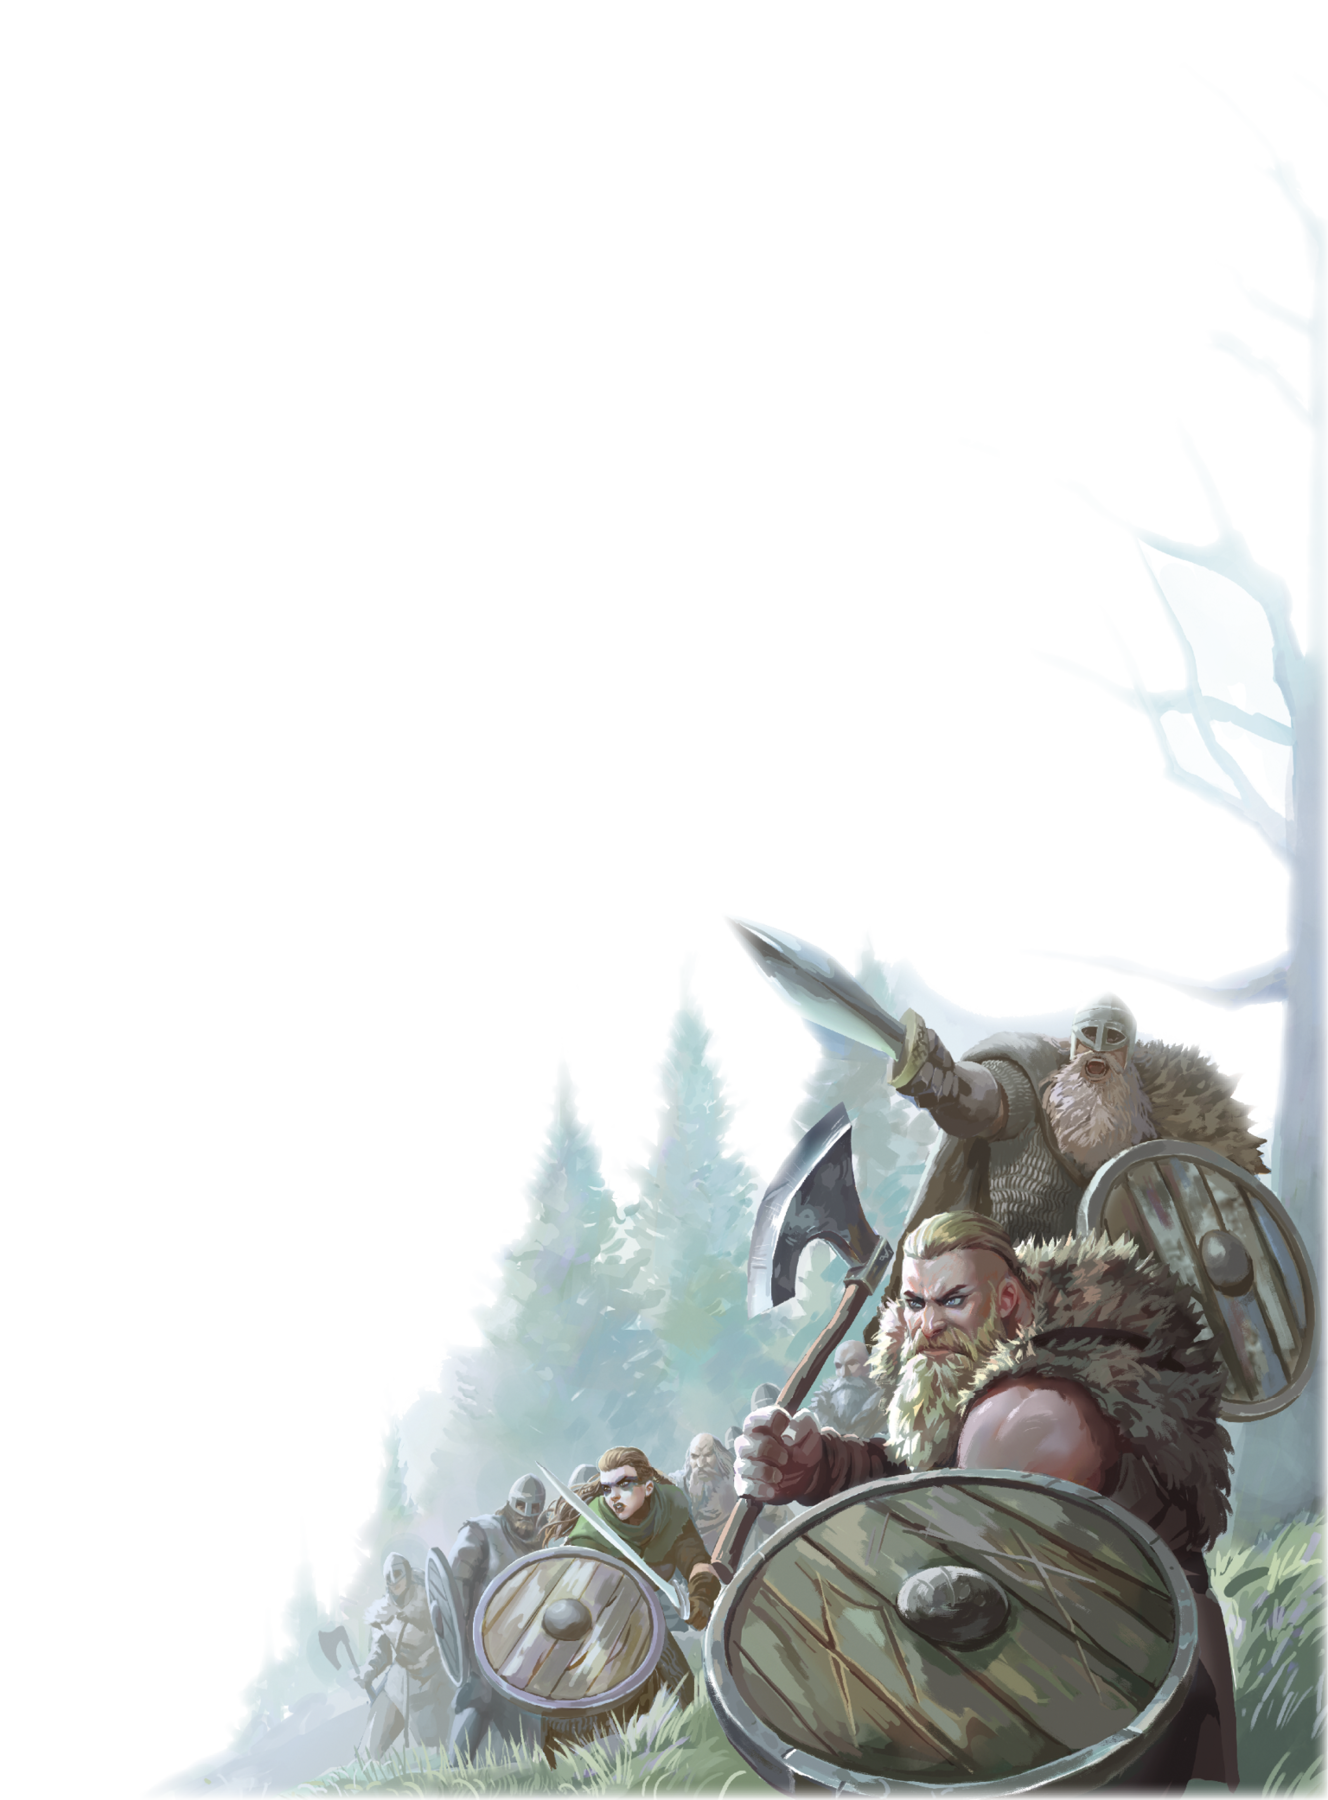 Ilustração. Representação de guerreiros vikings com barba e vestindo roupas de peles de animais segurando escudos de madeira e armas como machados e espadas.